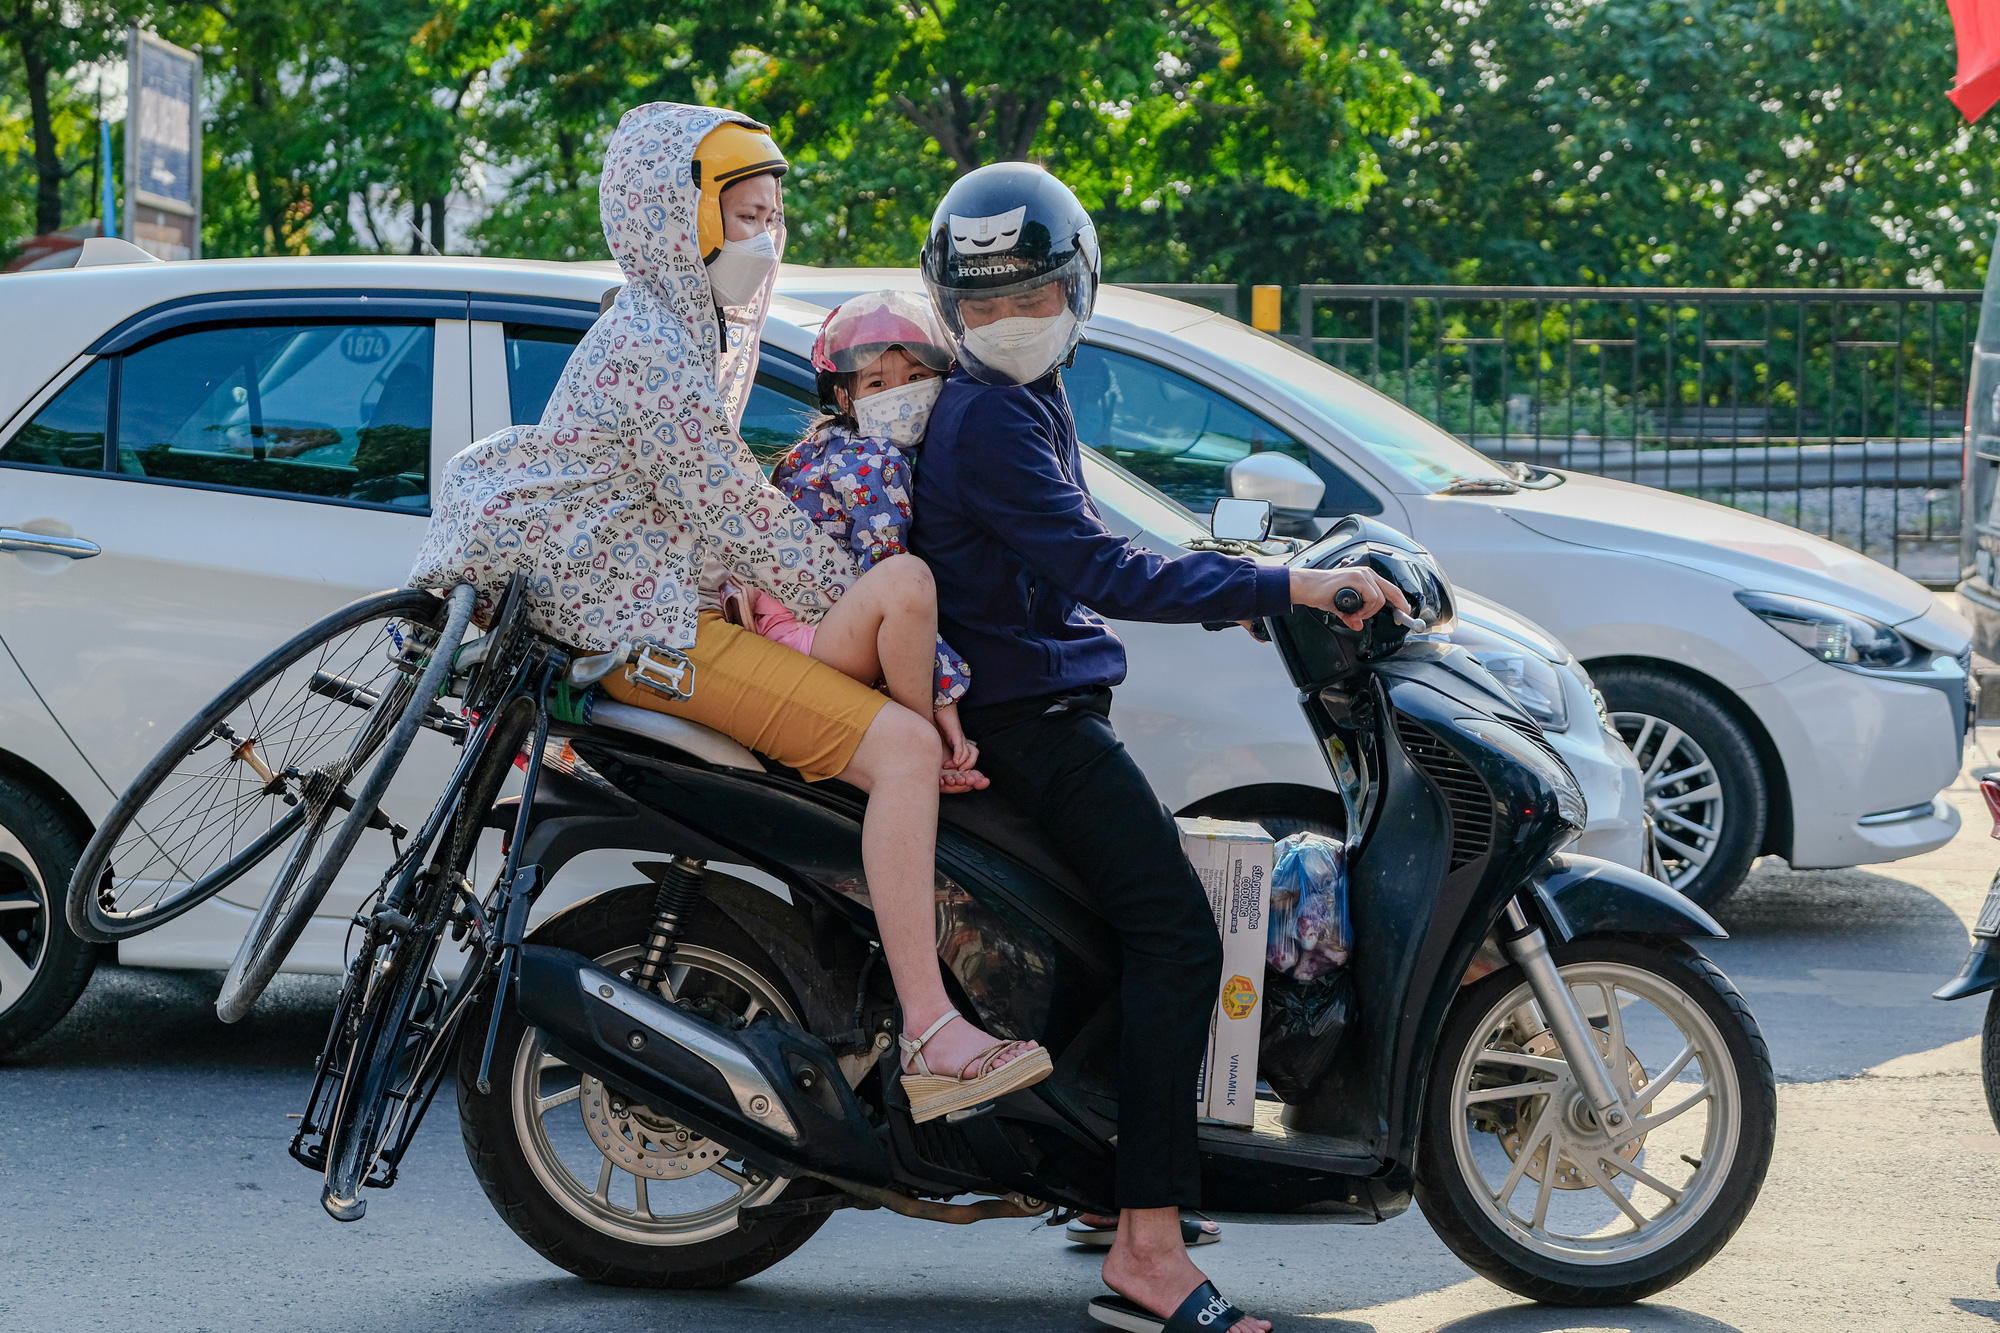 Người dân ùn ùn quay trở lại Hà Nội dù chưa kết thúc kỳ nghỉ lễ vì nỗi sợ tắc đường, giao thông khu vực cửa ngõ ùn ứ-3